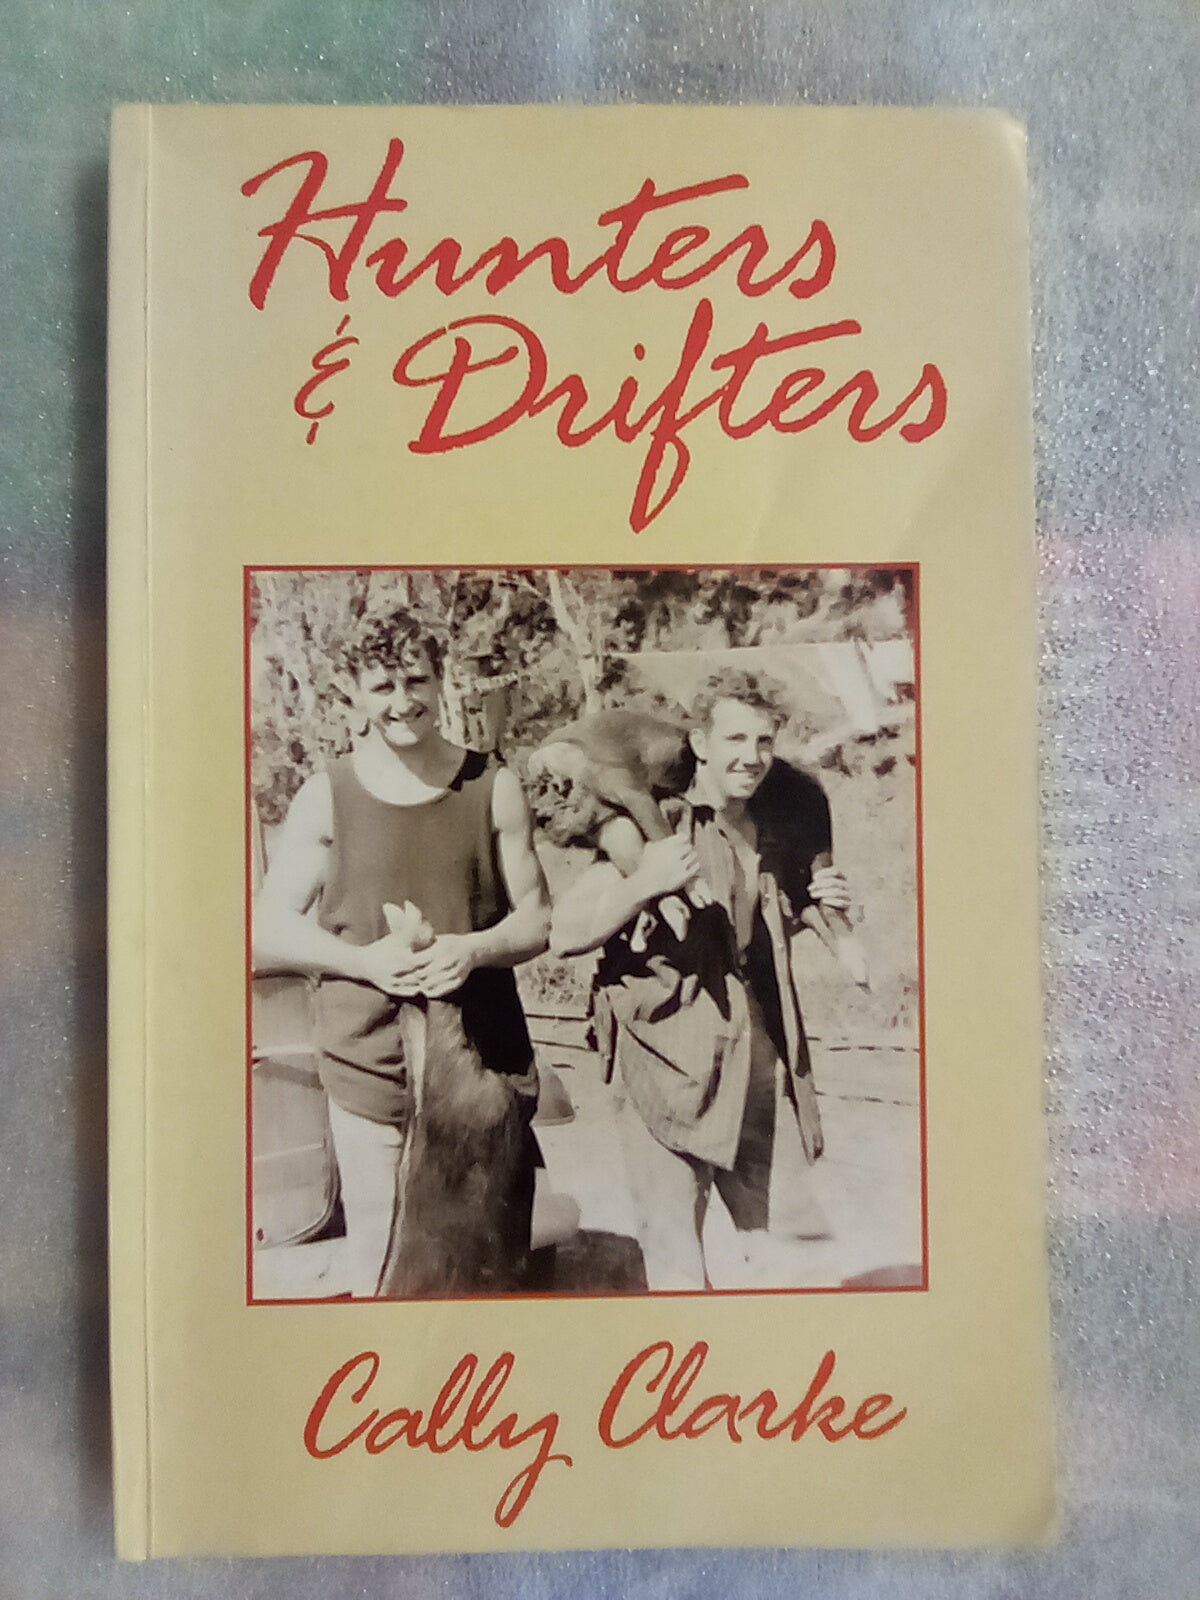 Hunters & Drifters by Cally Clarke